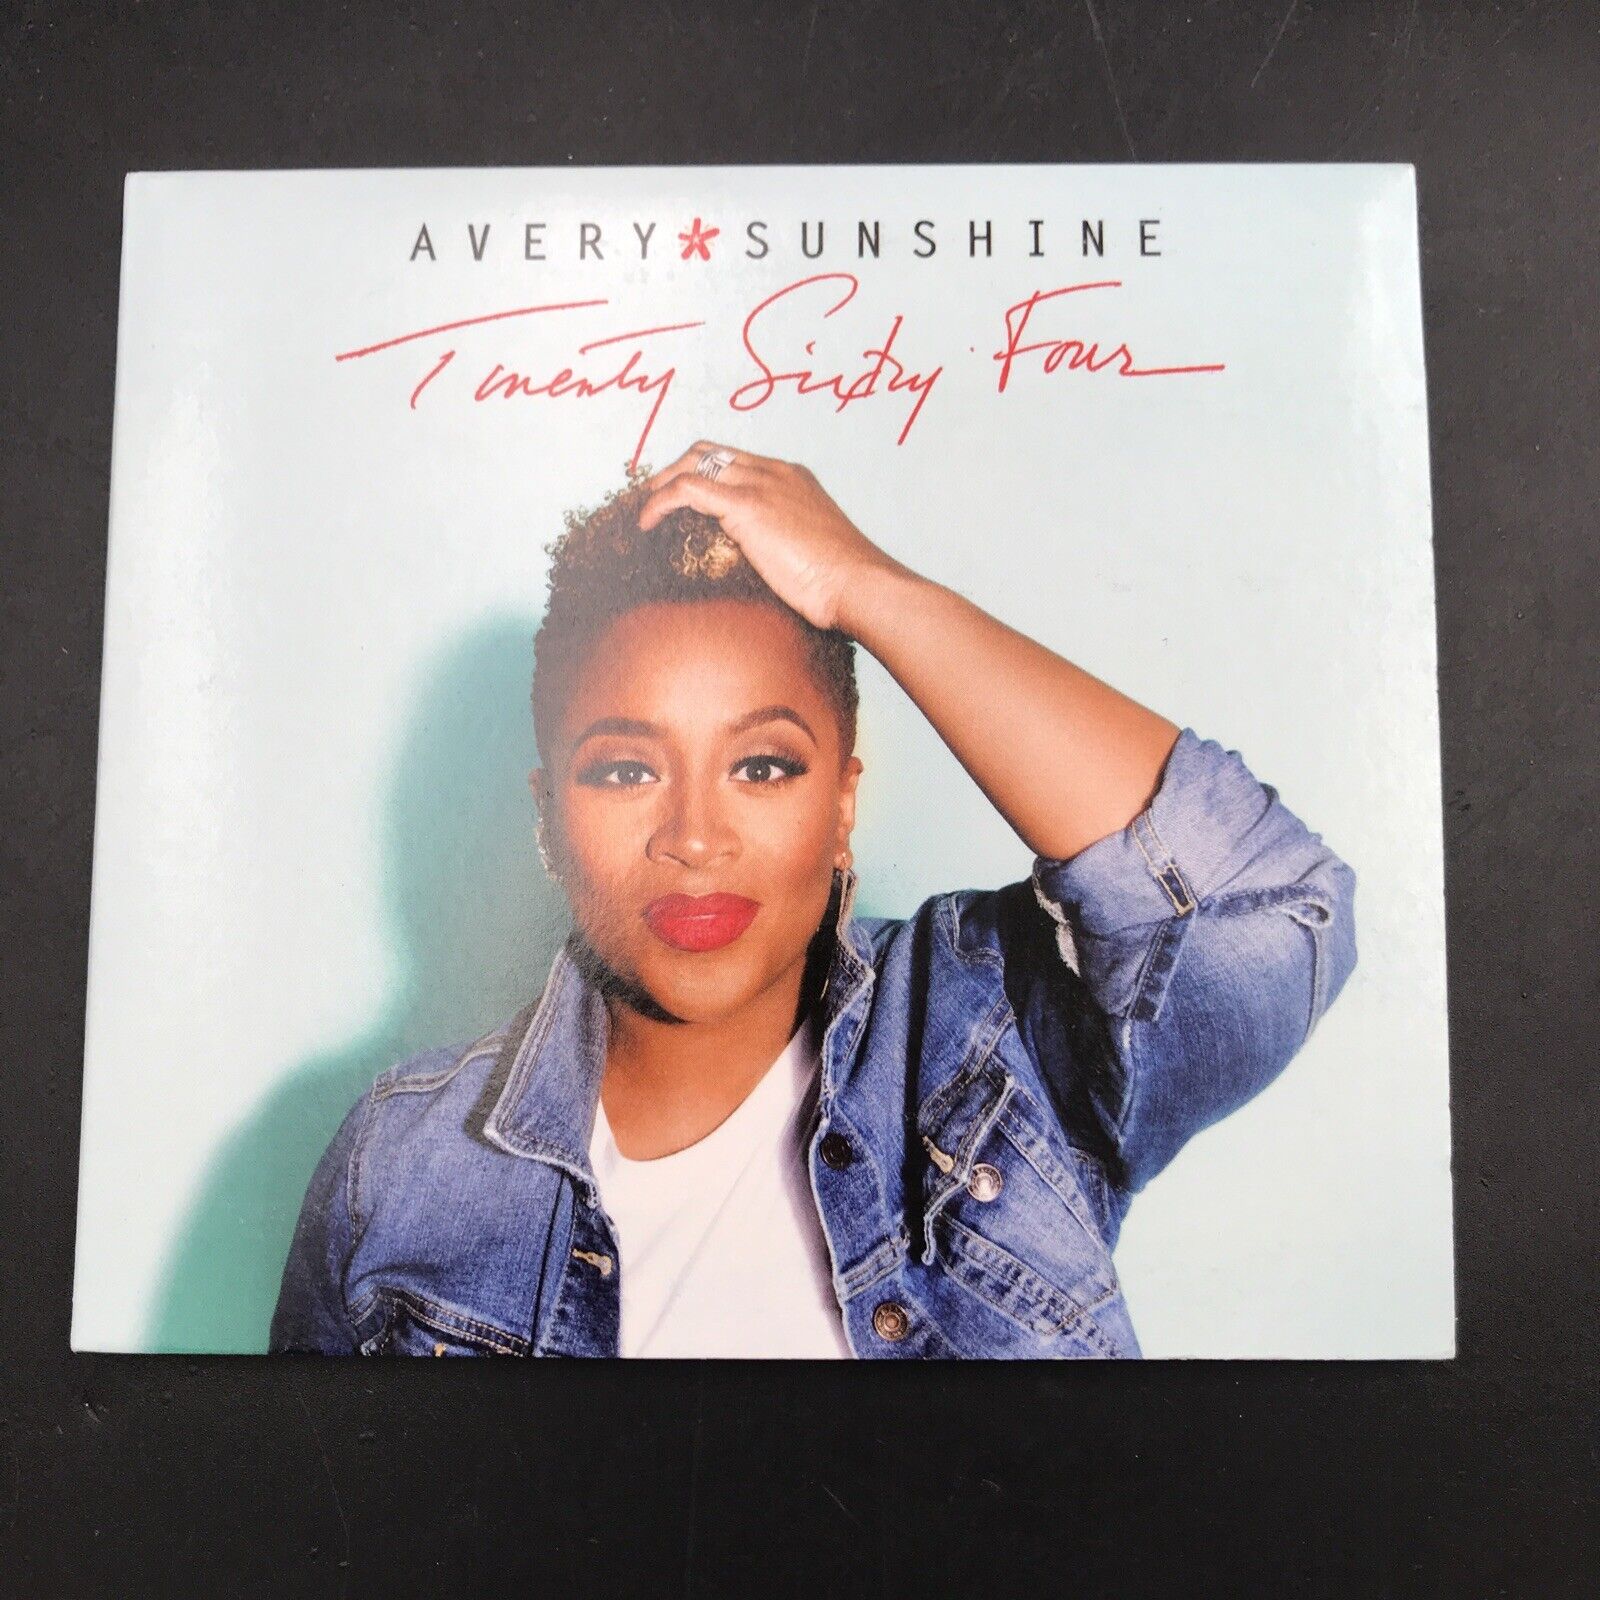 Twenty Sixty Four by Sunshine, Avery (CD, 2017) SH 5836